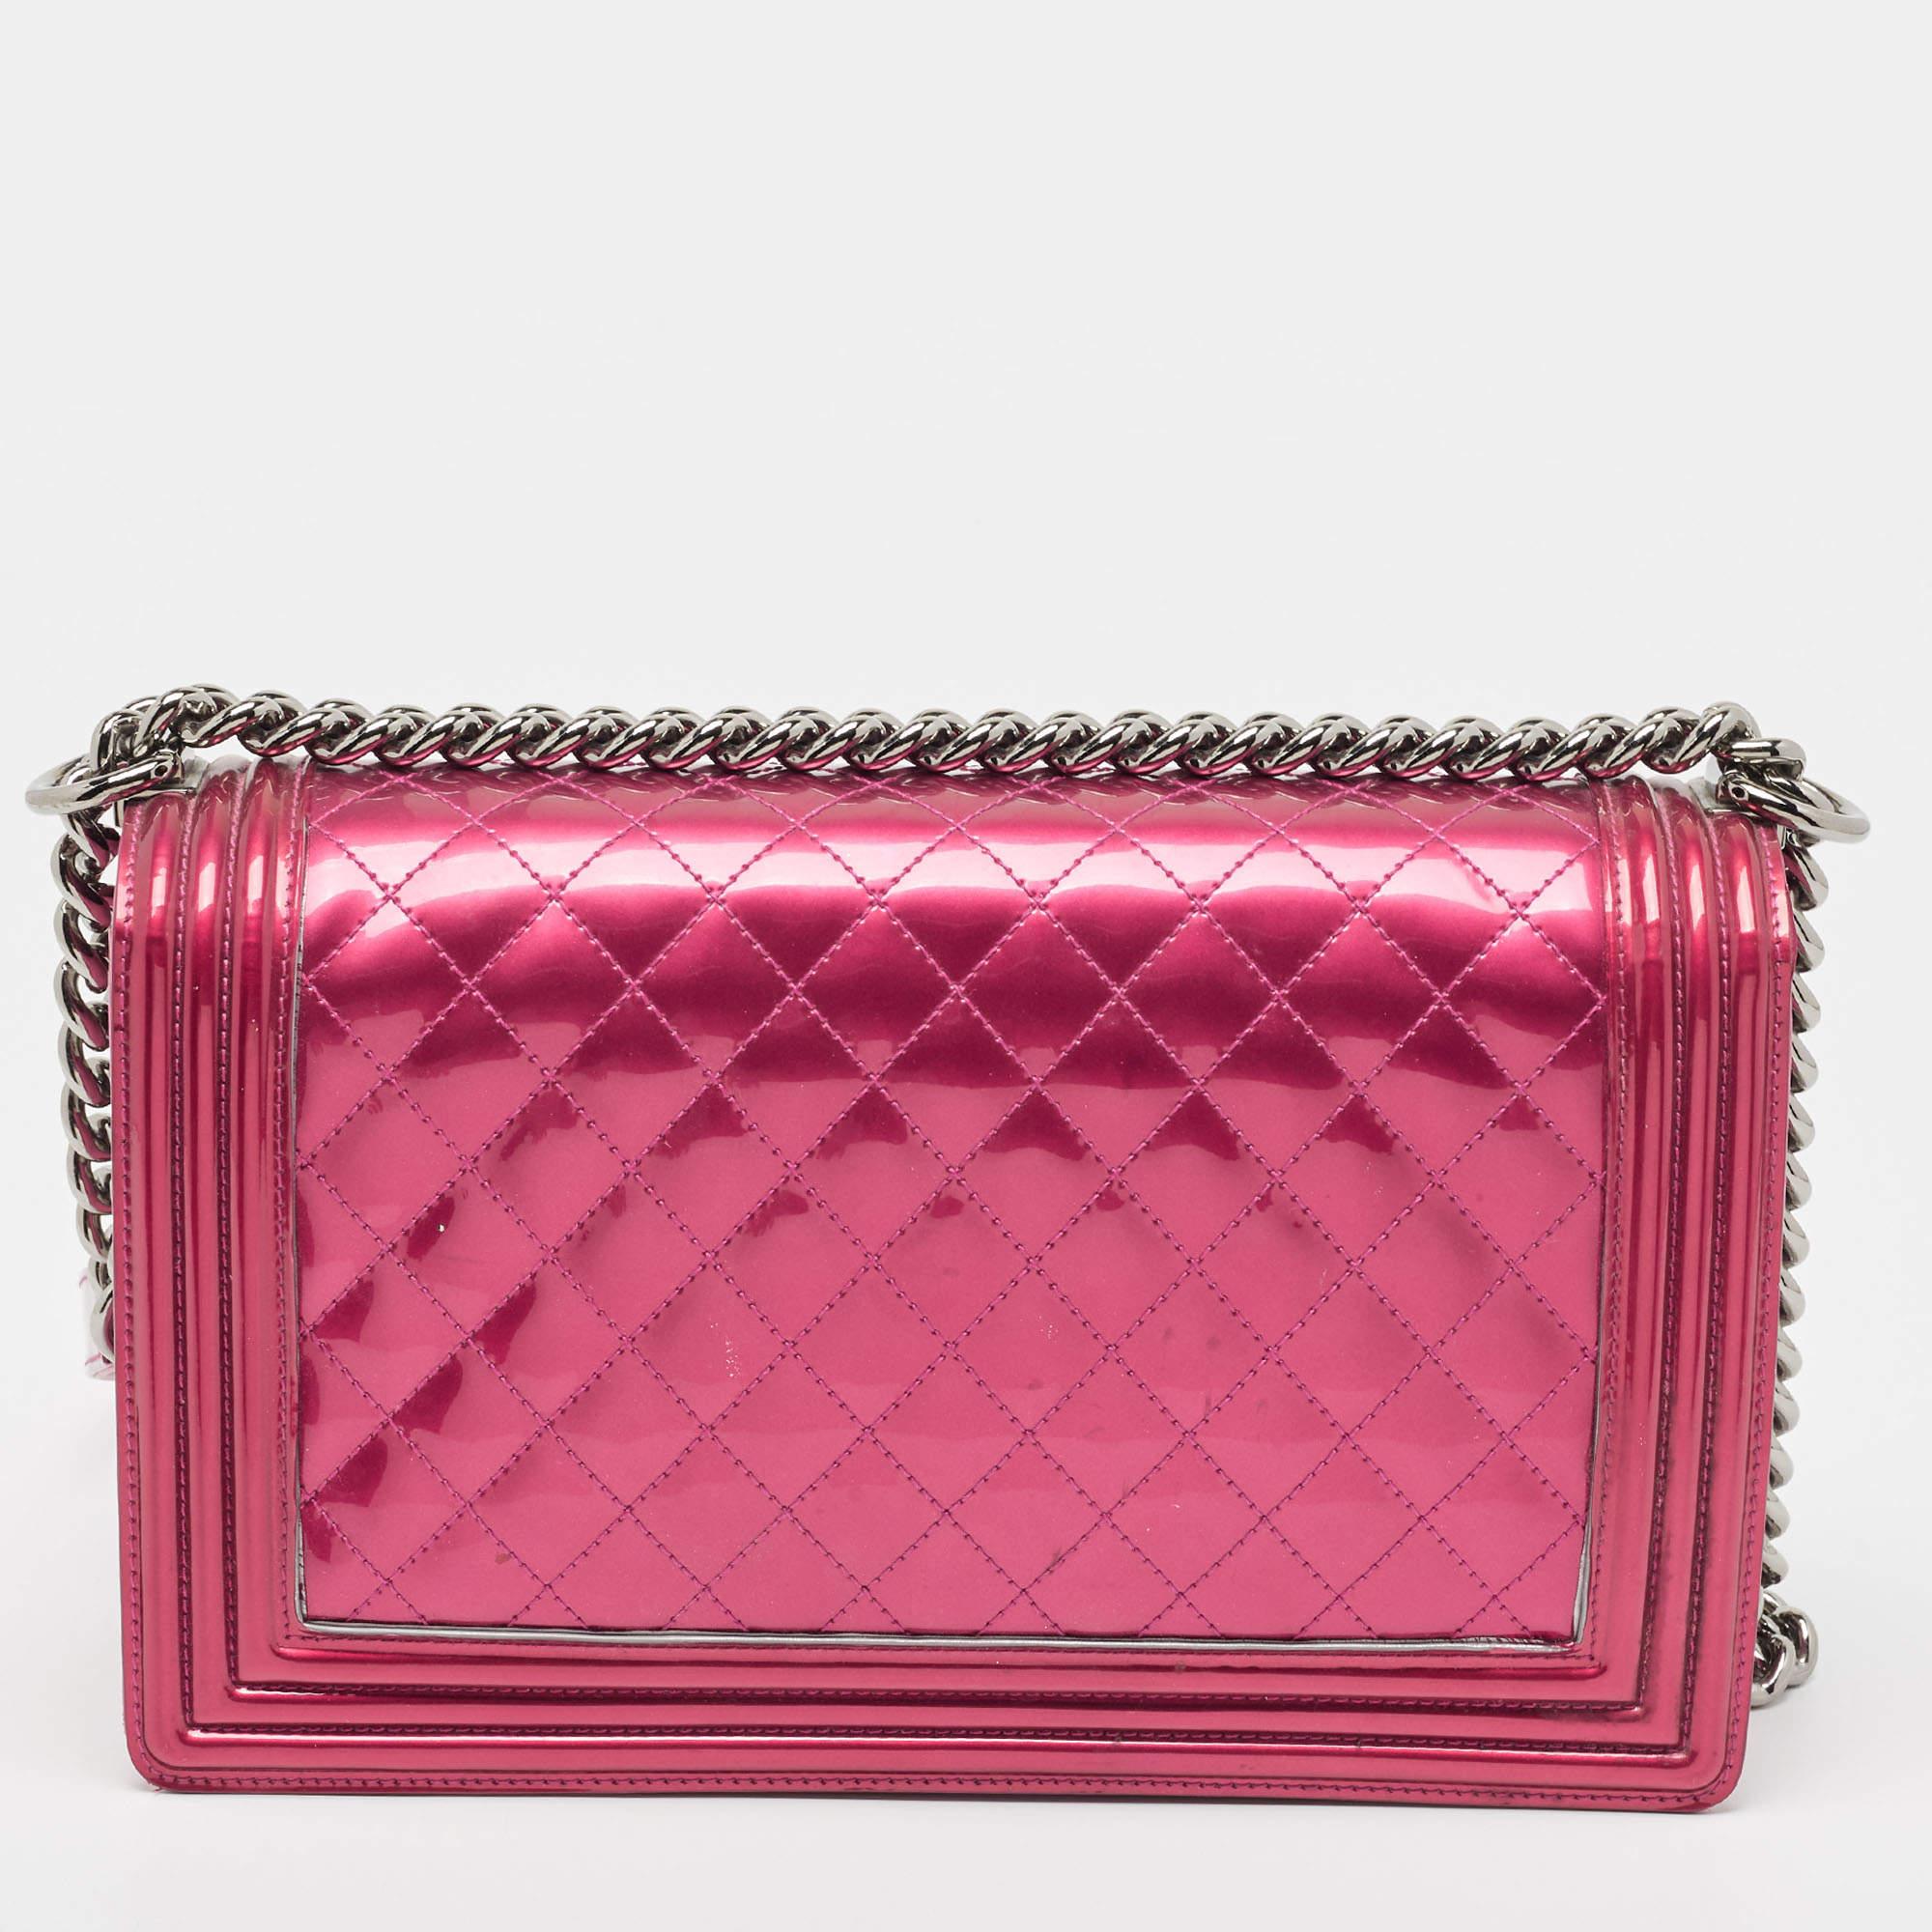 Die als Teil der Chanel Herbst/Winter-Kollektion 2011 eingeführte Boy Flap Bag verkörpert einen verführerischen Reiz und wird durch exquisite Details ergänzt. Diese rosafarbene Kreation wurde sorgfältig aus gestepptem Lackleder gefertigt und verfügt